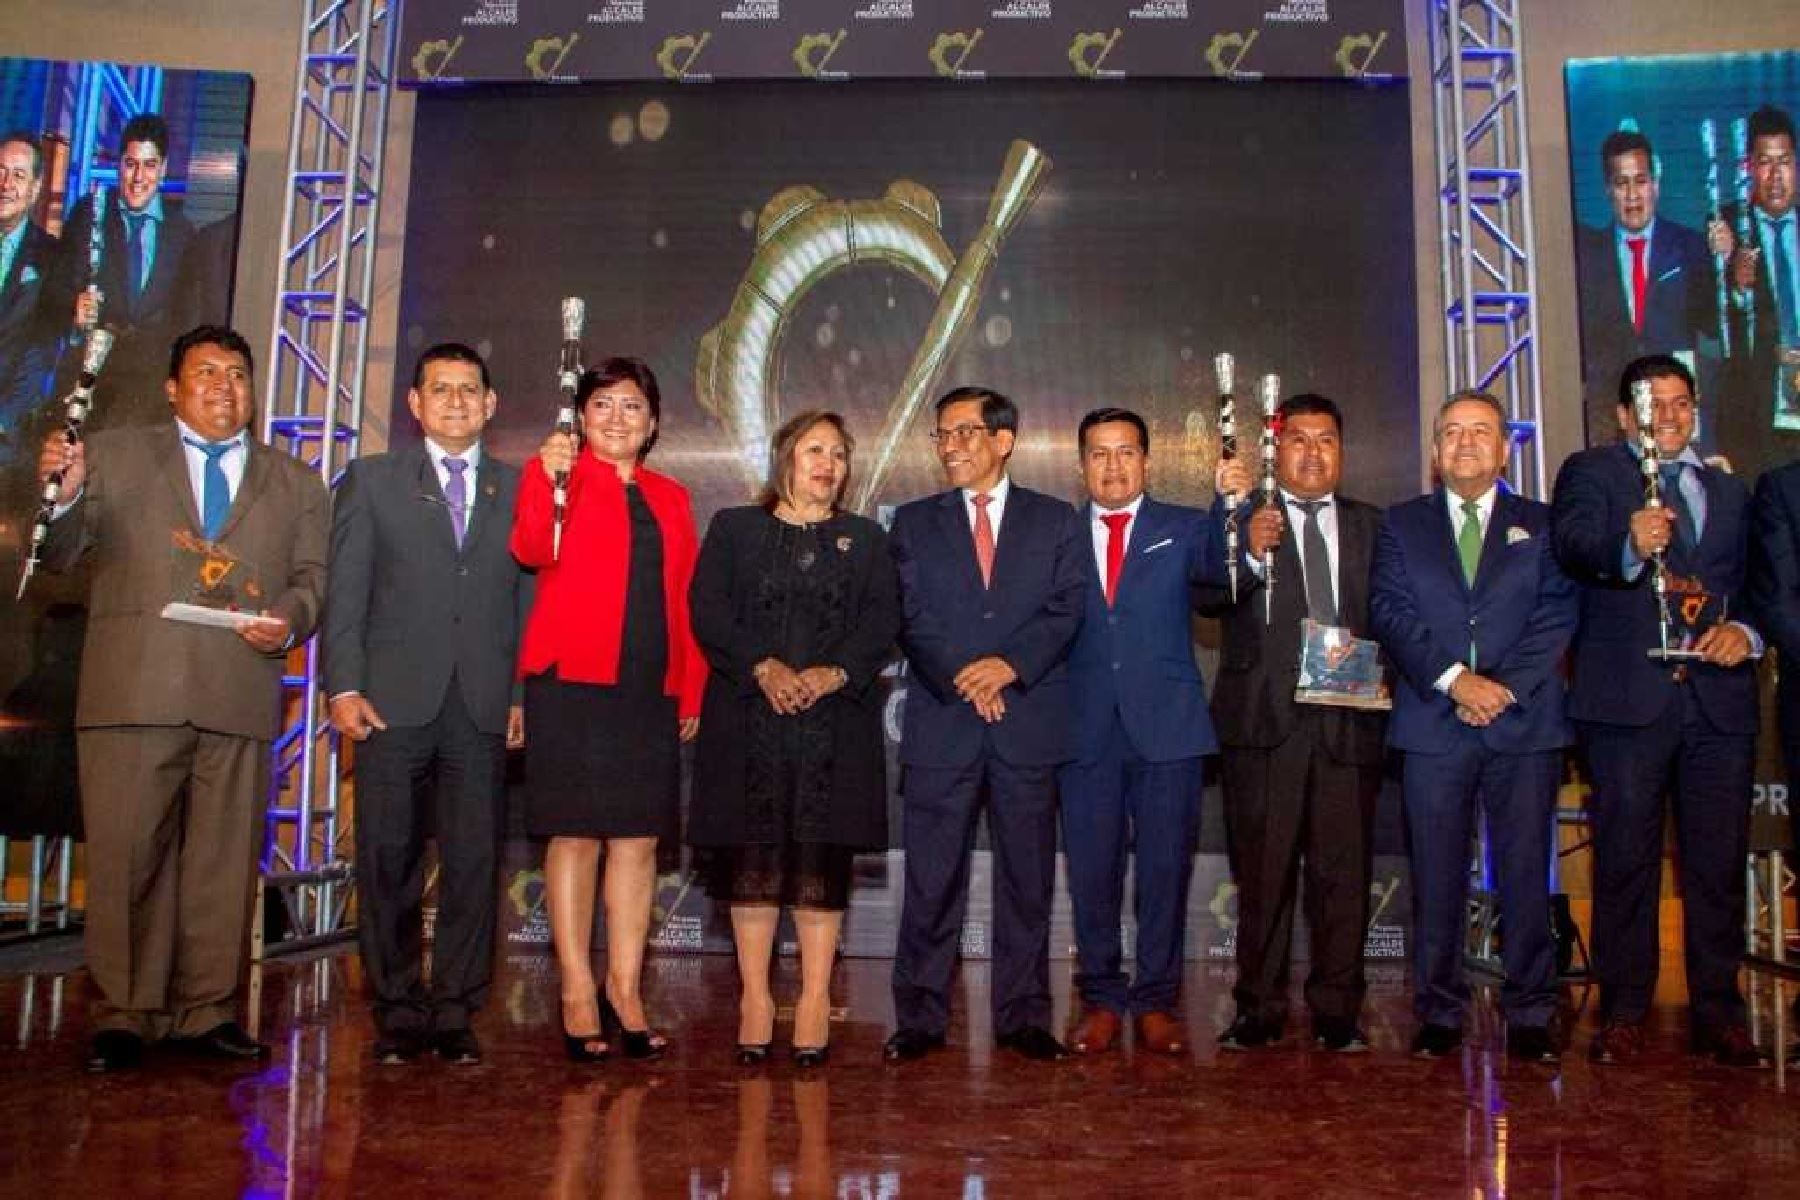 Los alcaldes reconocidos fueron de las regiones de Apurímac, Cusco, Junín, Huánuco, Pasco, Piura, Puno y San Martín; pero solo cinco autoridades locales recibieron como trofeo su “Varayoc,